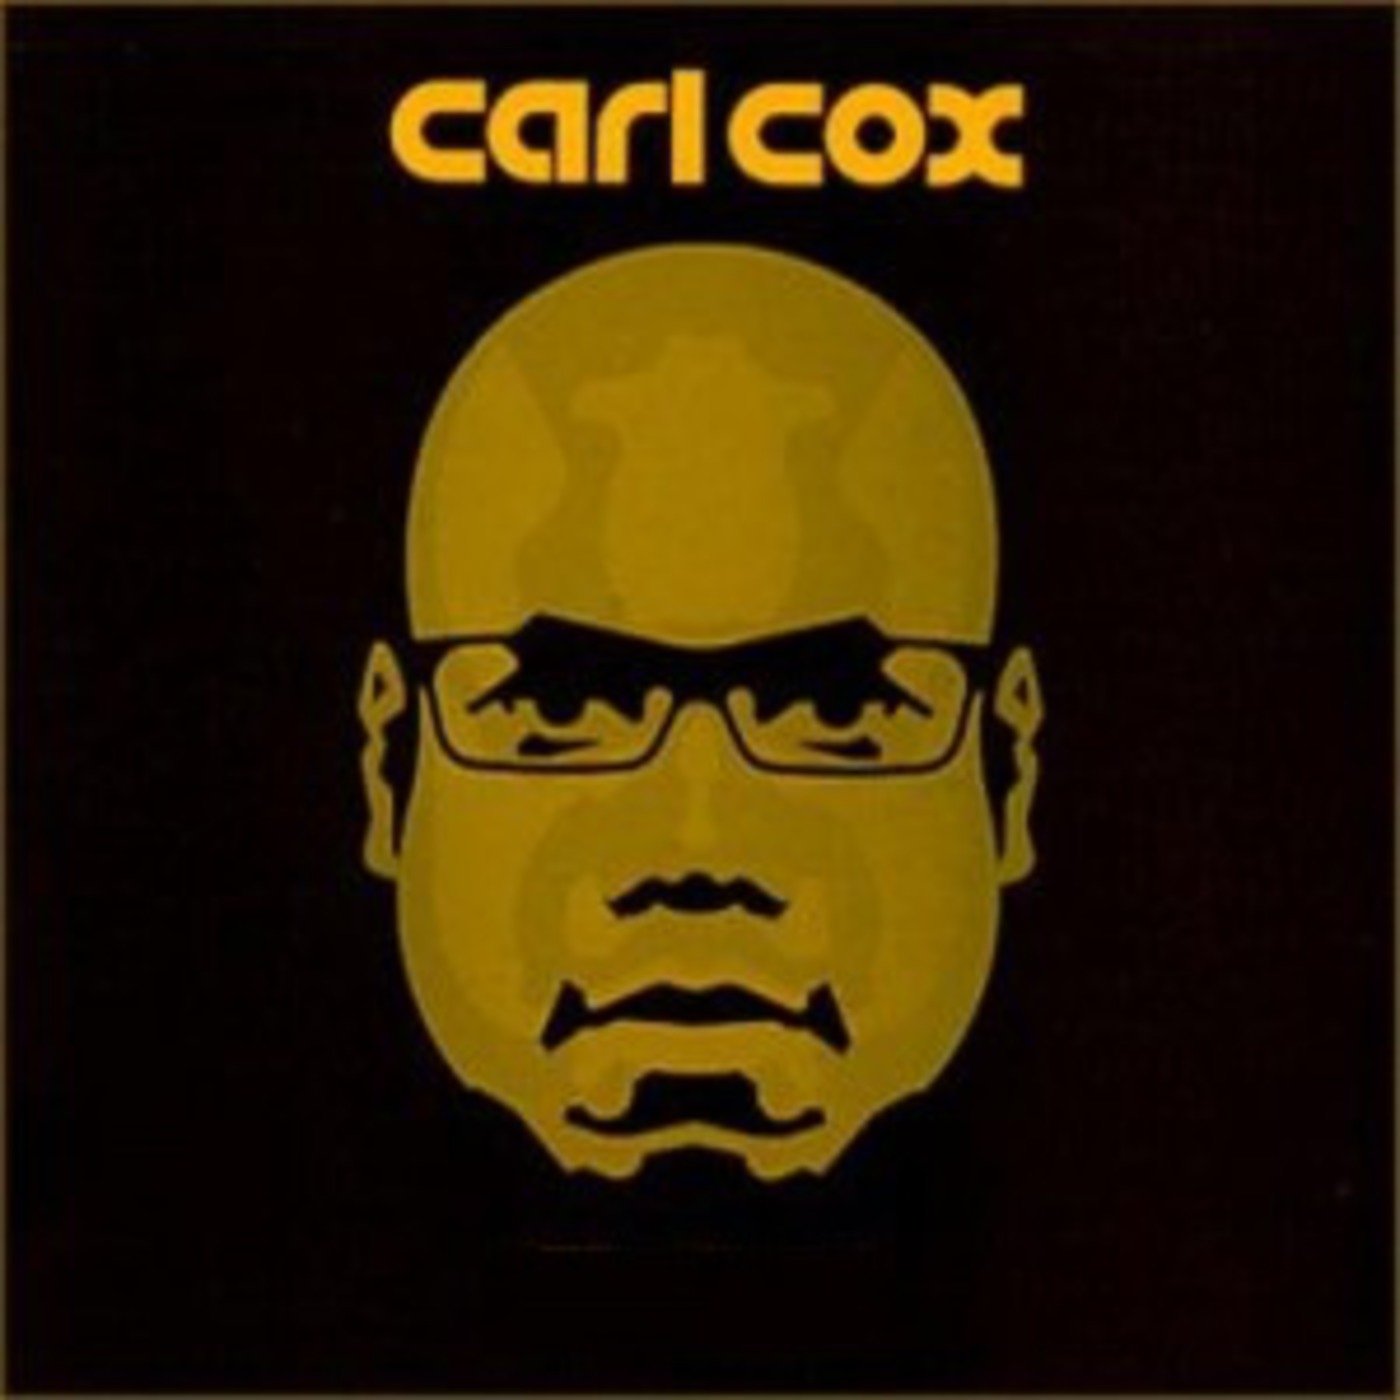 Episode 10 - A Tribute to Carl Cox